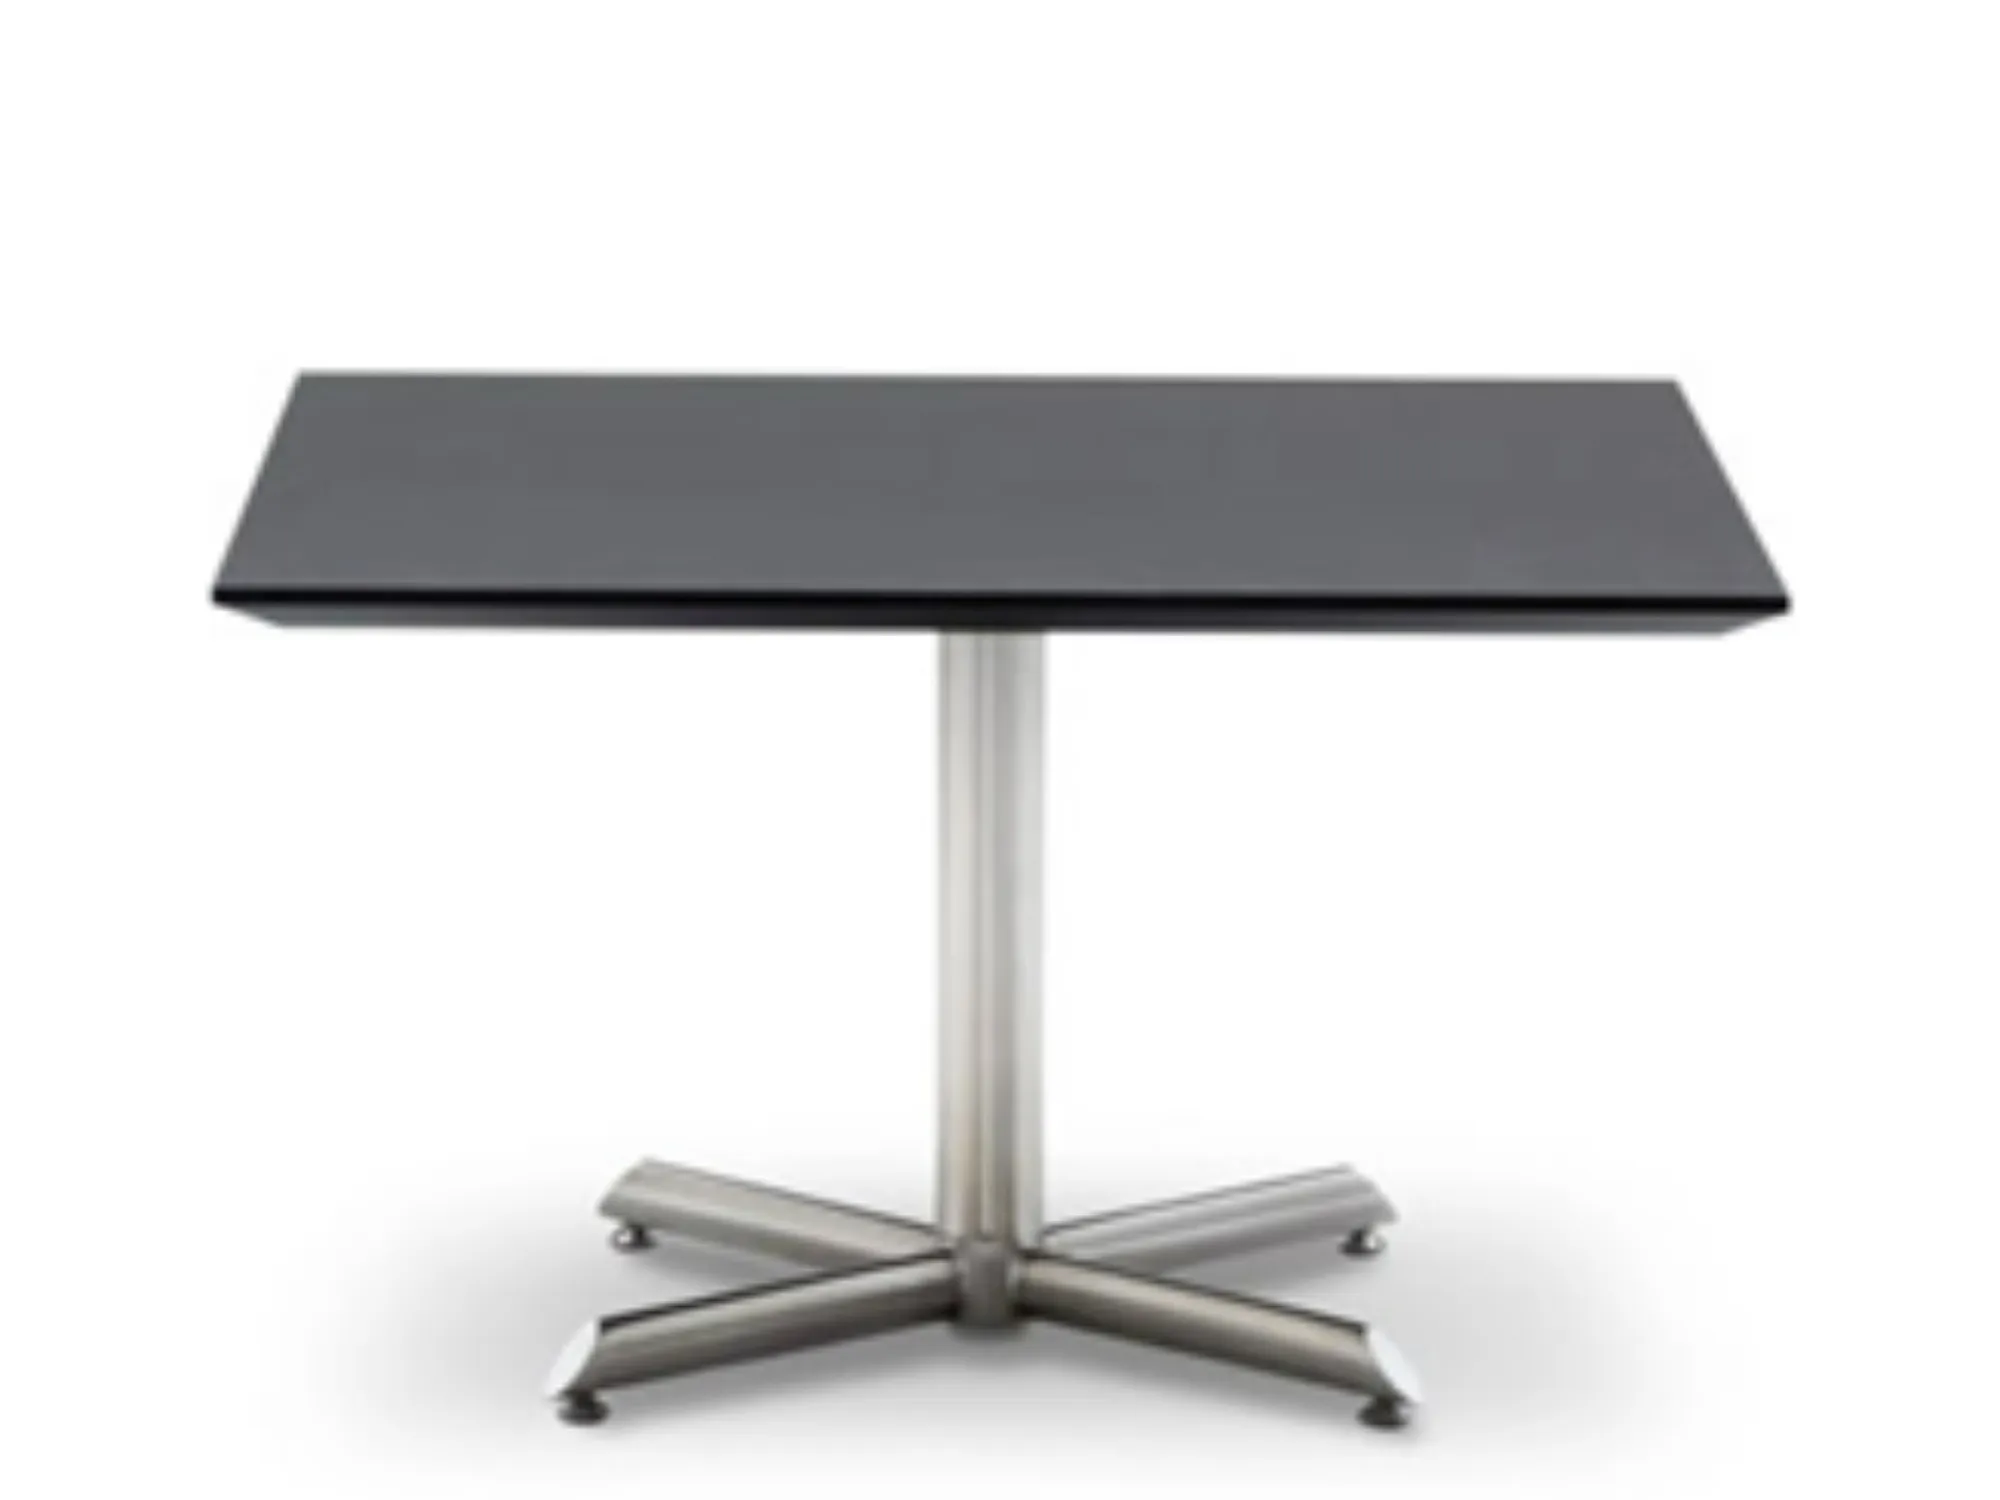 Hæderlig Herske Sequel Designerbordet Sofabord - sort linoleum m. stålstel - TILBUD 4.499,-